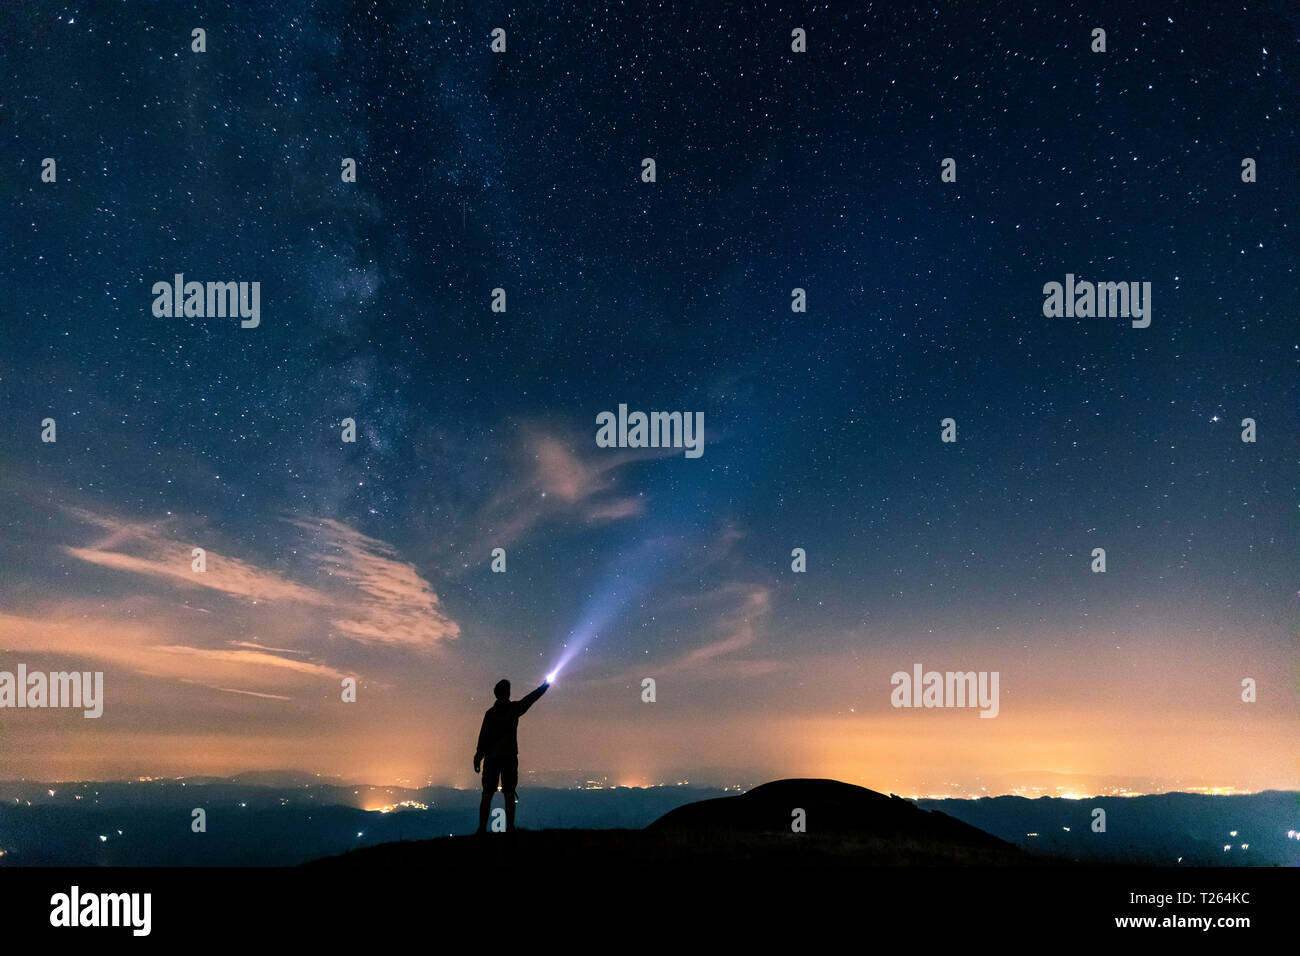 L'Italia, Monte Nerone, silhouette di un uomo con torcia sotto il cielo notturno con le stelle e la via lattea Foto Stock